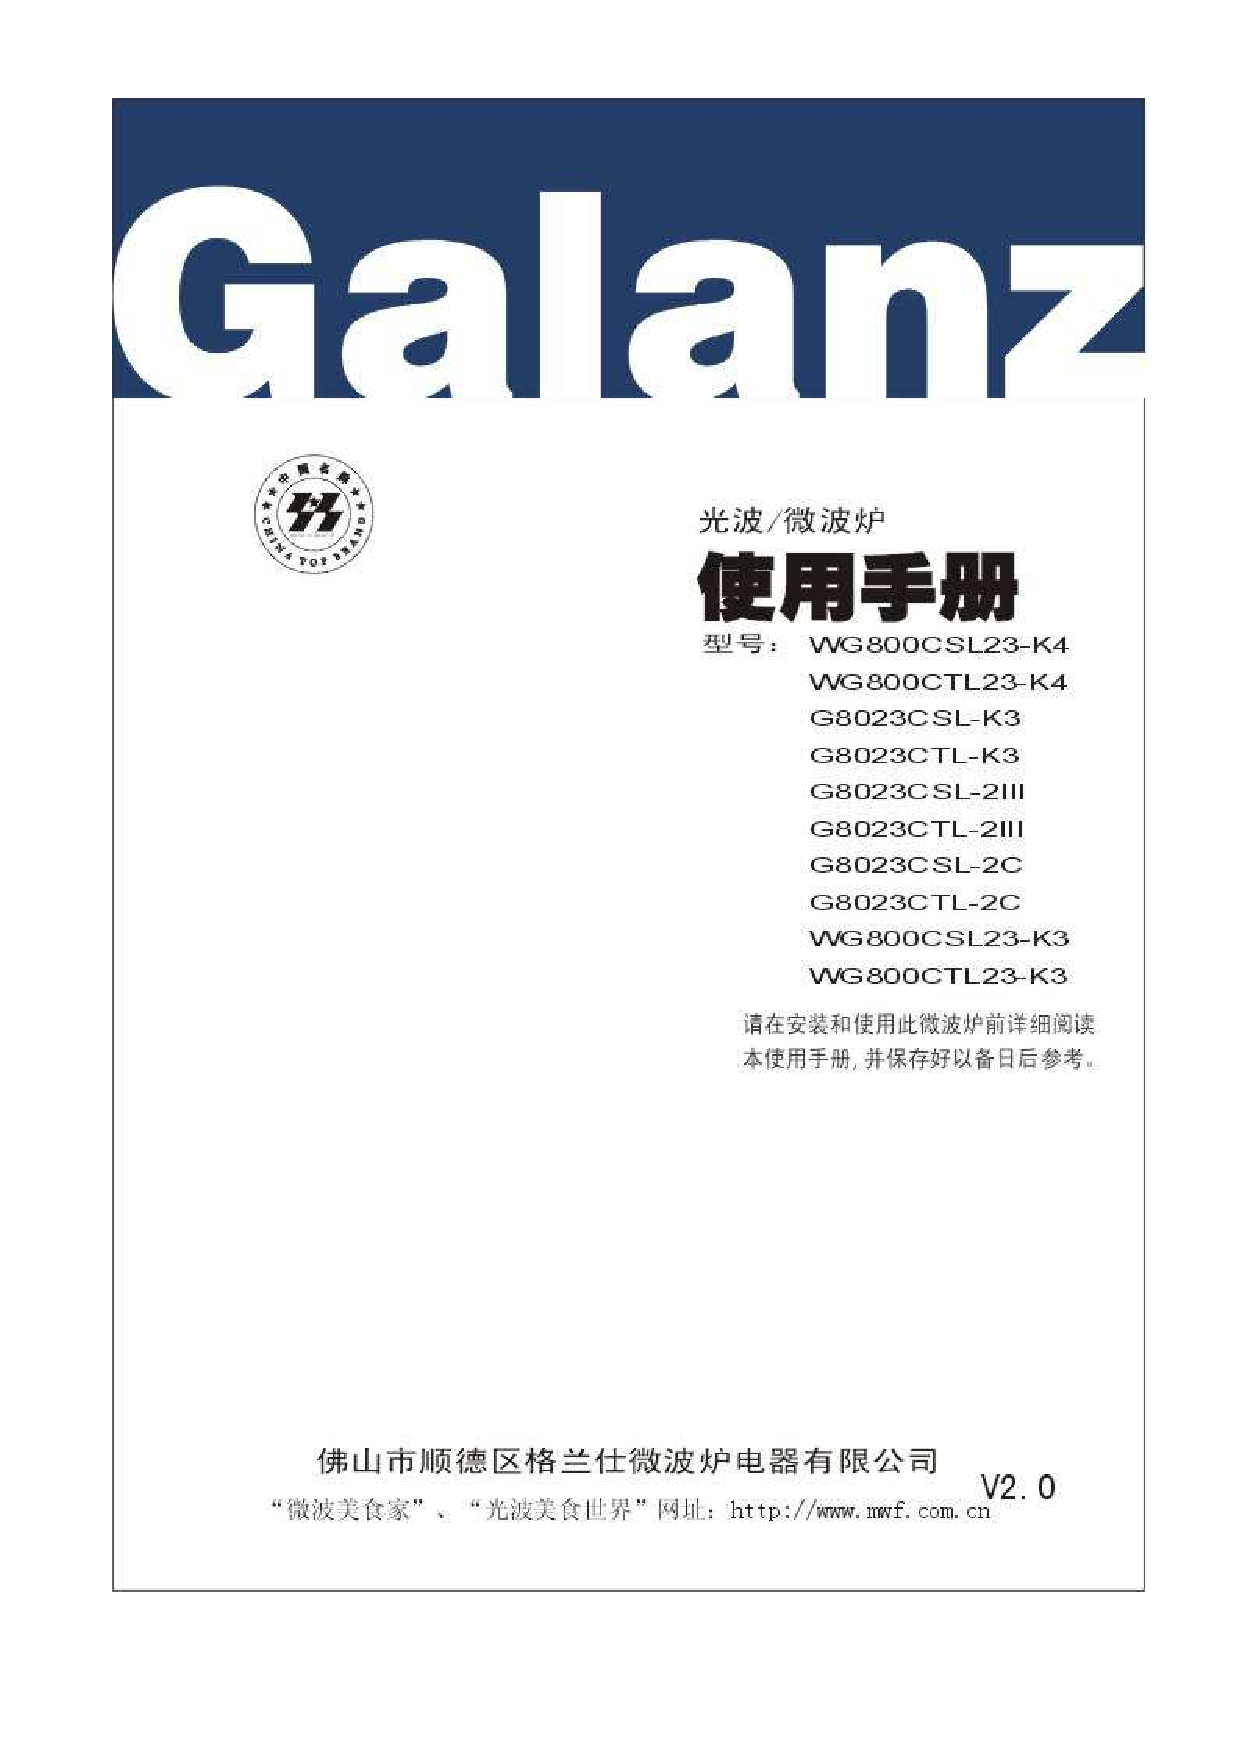 格兰仕 Galanz G8023CSL-2C, WG800CSL23-K3 使用手册 封面